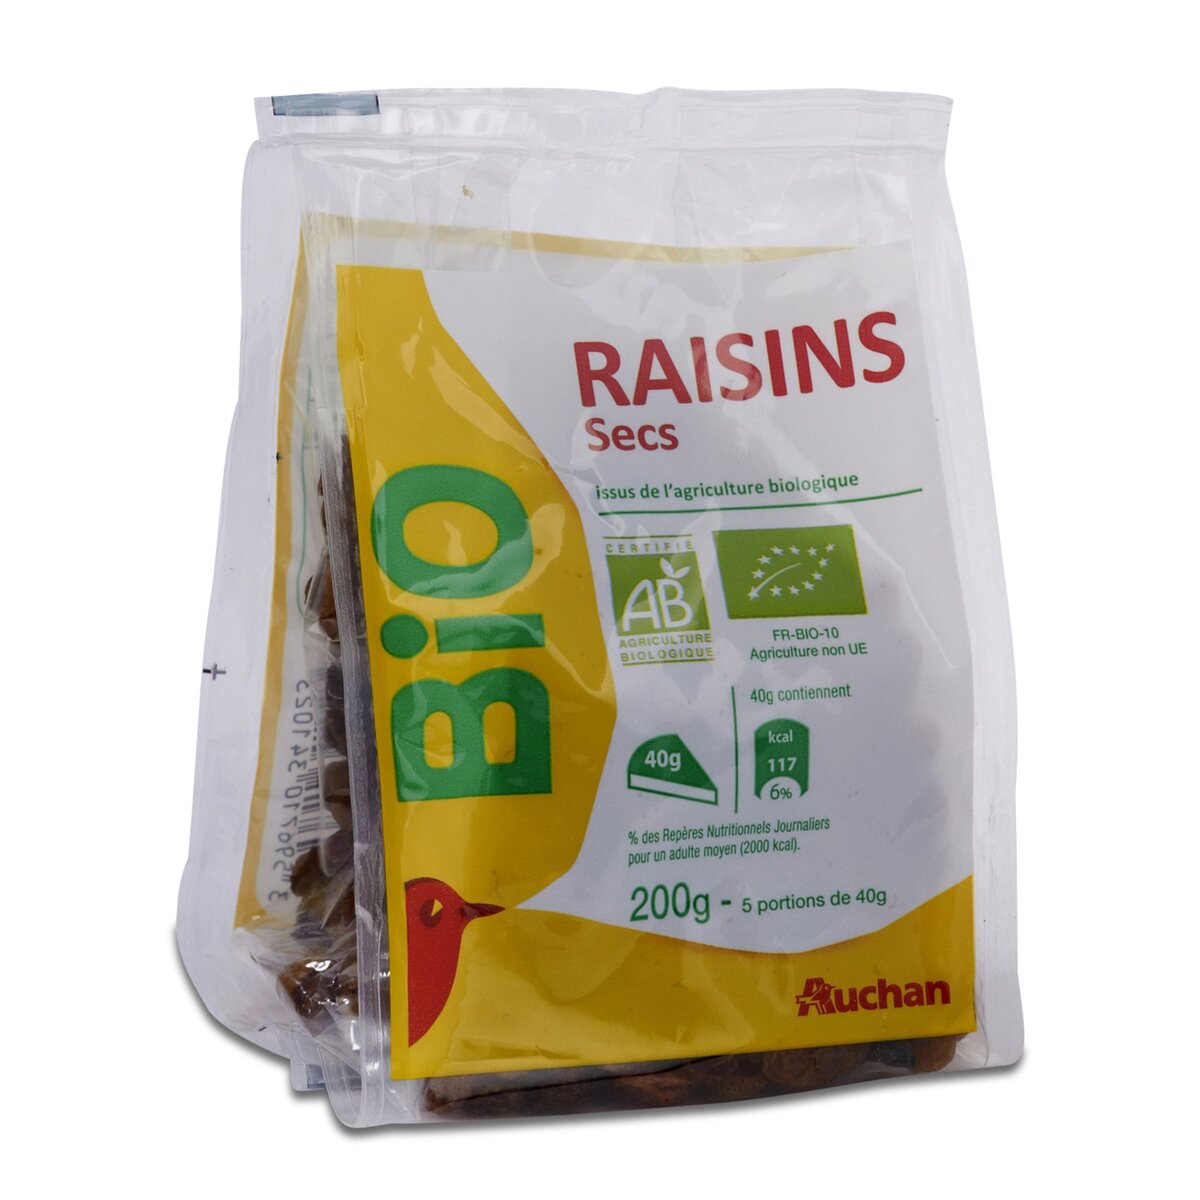 AUCHAN Auchan raisins bio 200g